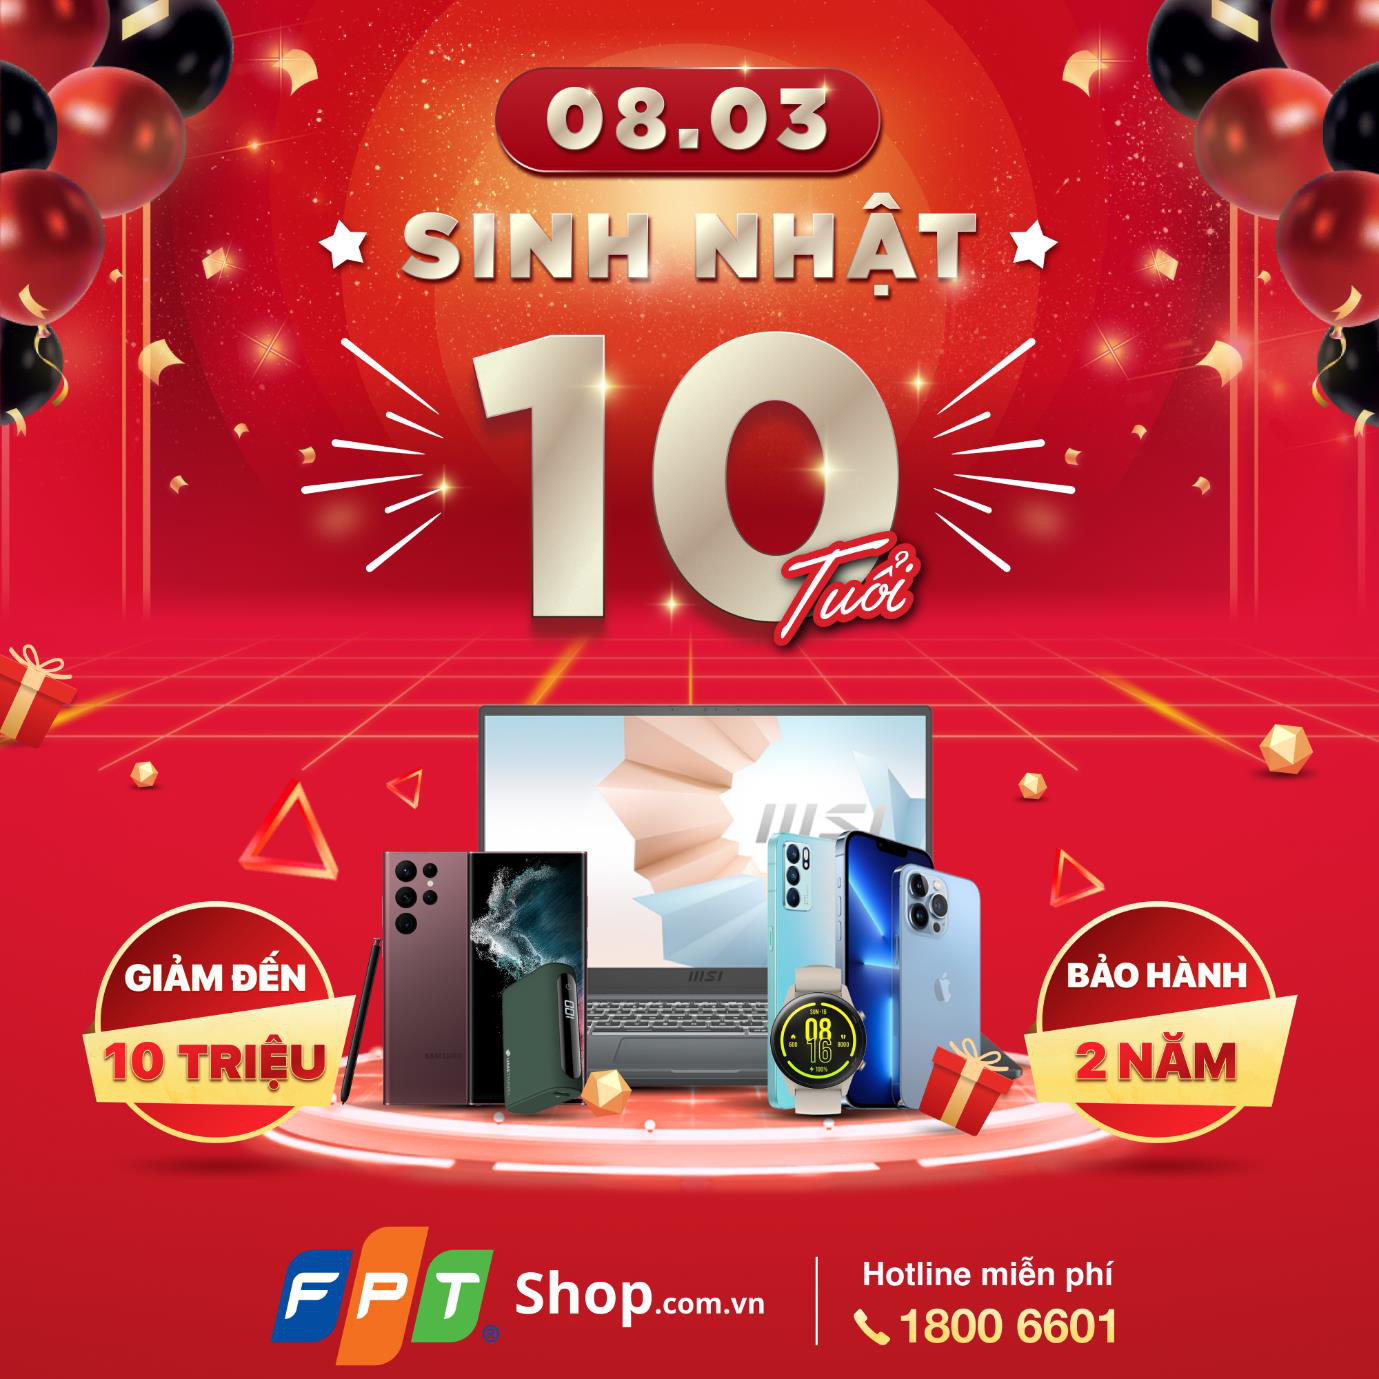 FPT Shop mừng sinh nhật 10 tuổi, giảm giá đến 10 triệu đồng - Ảnh 1.